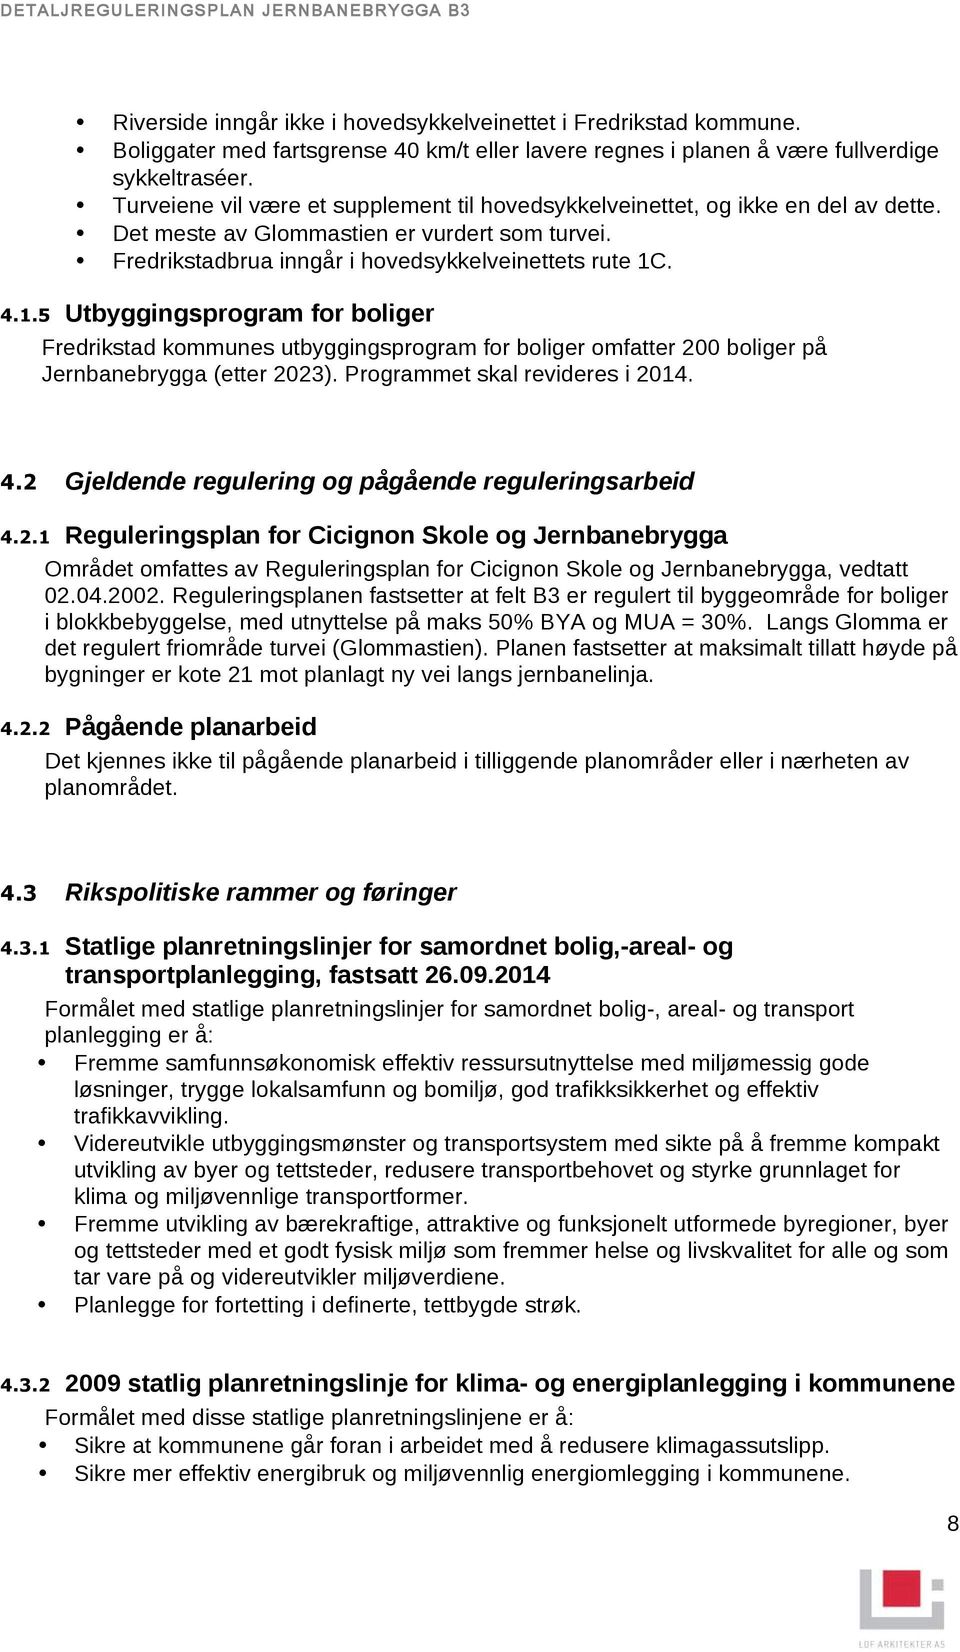 . 4.1.5 Utbyggingsprogram for boliger Fredrikstad kommunes utbyggingsprogram for boliger omfatter 200 boliger på Jernbanebrygga (etter 2023). Programmet skal revideres i 2014. 4.2 Gjeldende regulering og pågående reguleringsarbeid 4.